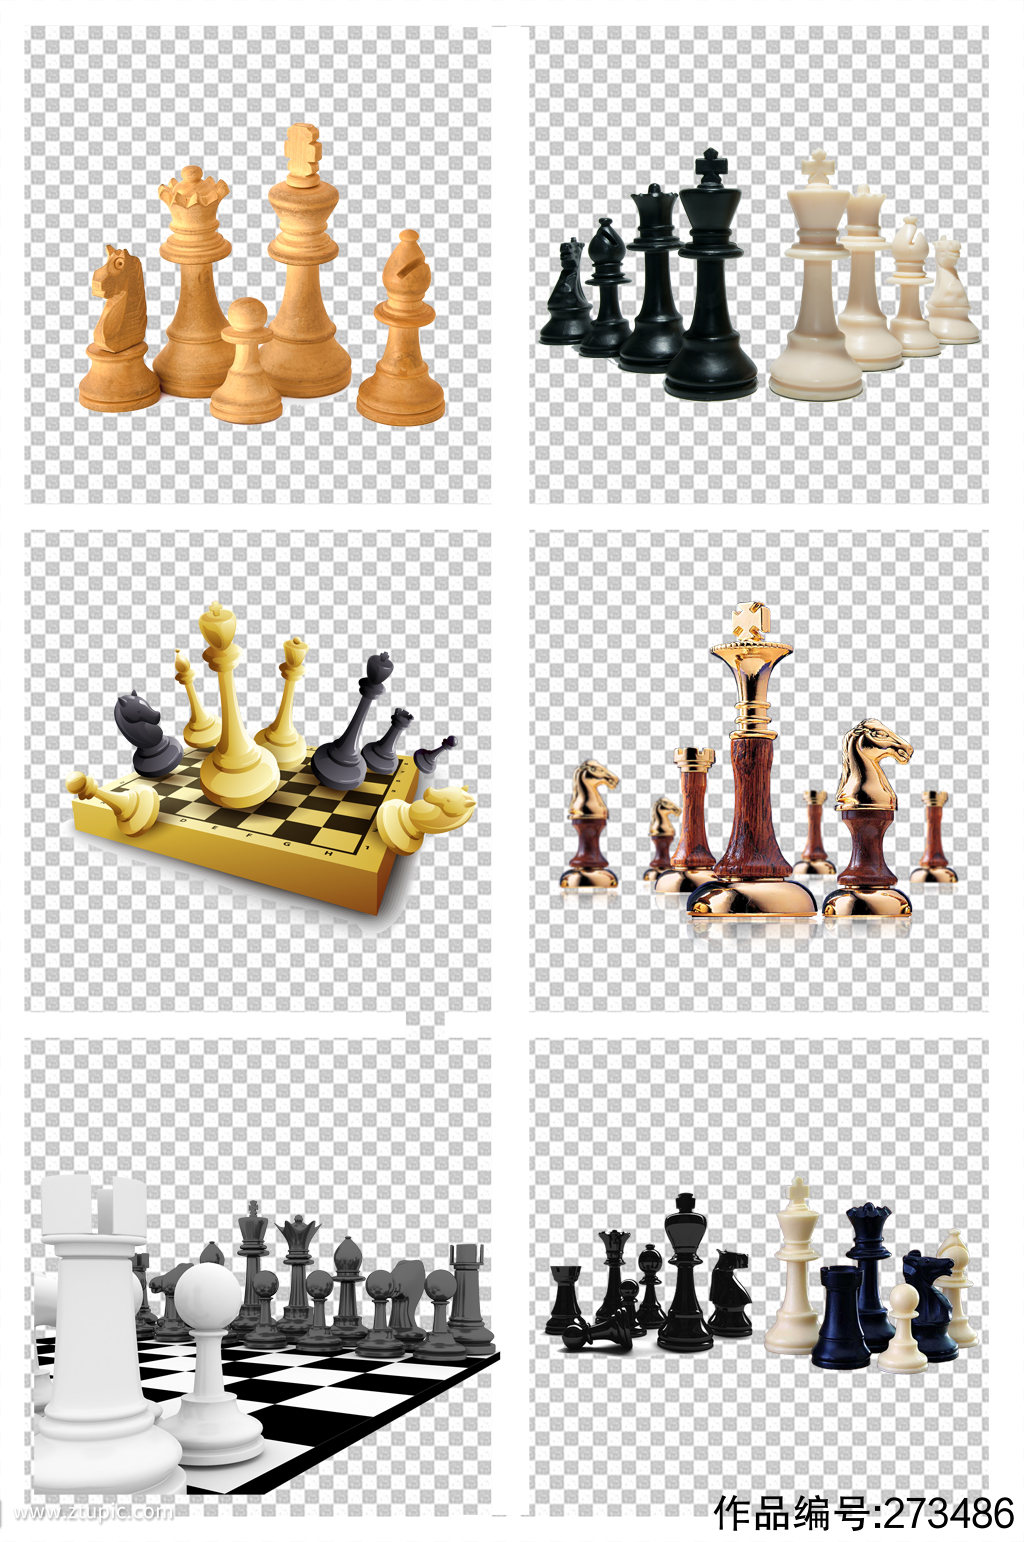 国际象棋博弈素材